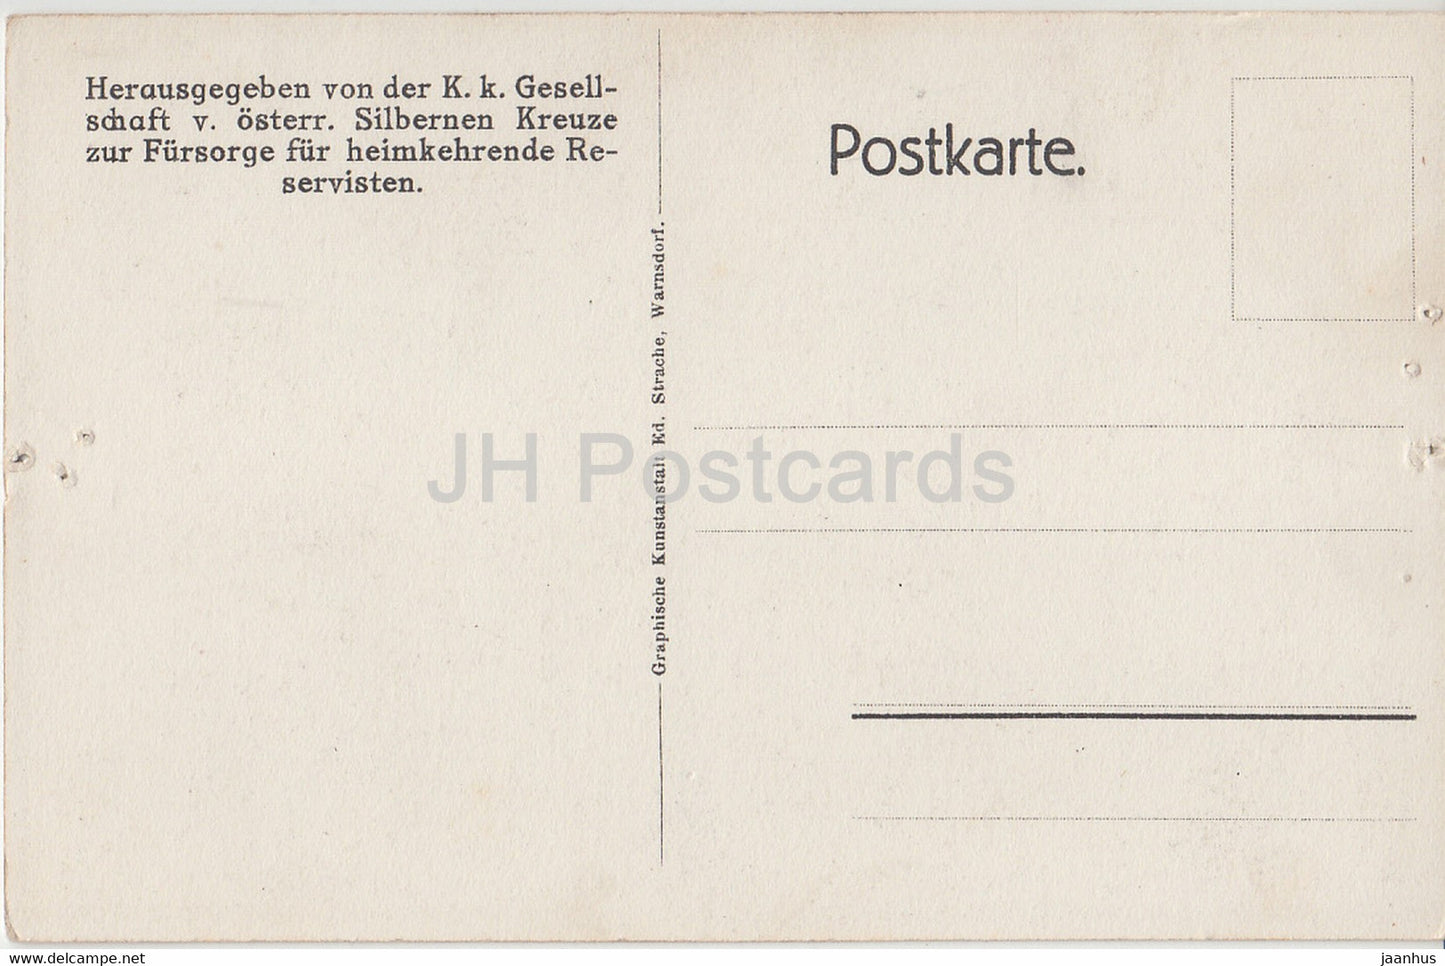 Général Laudon - cheval - carte postale ancienne - Autriche - inutilisée